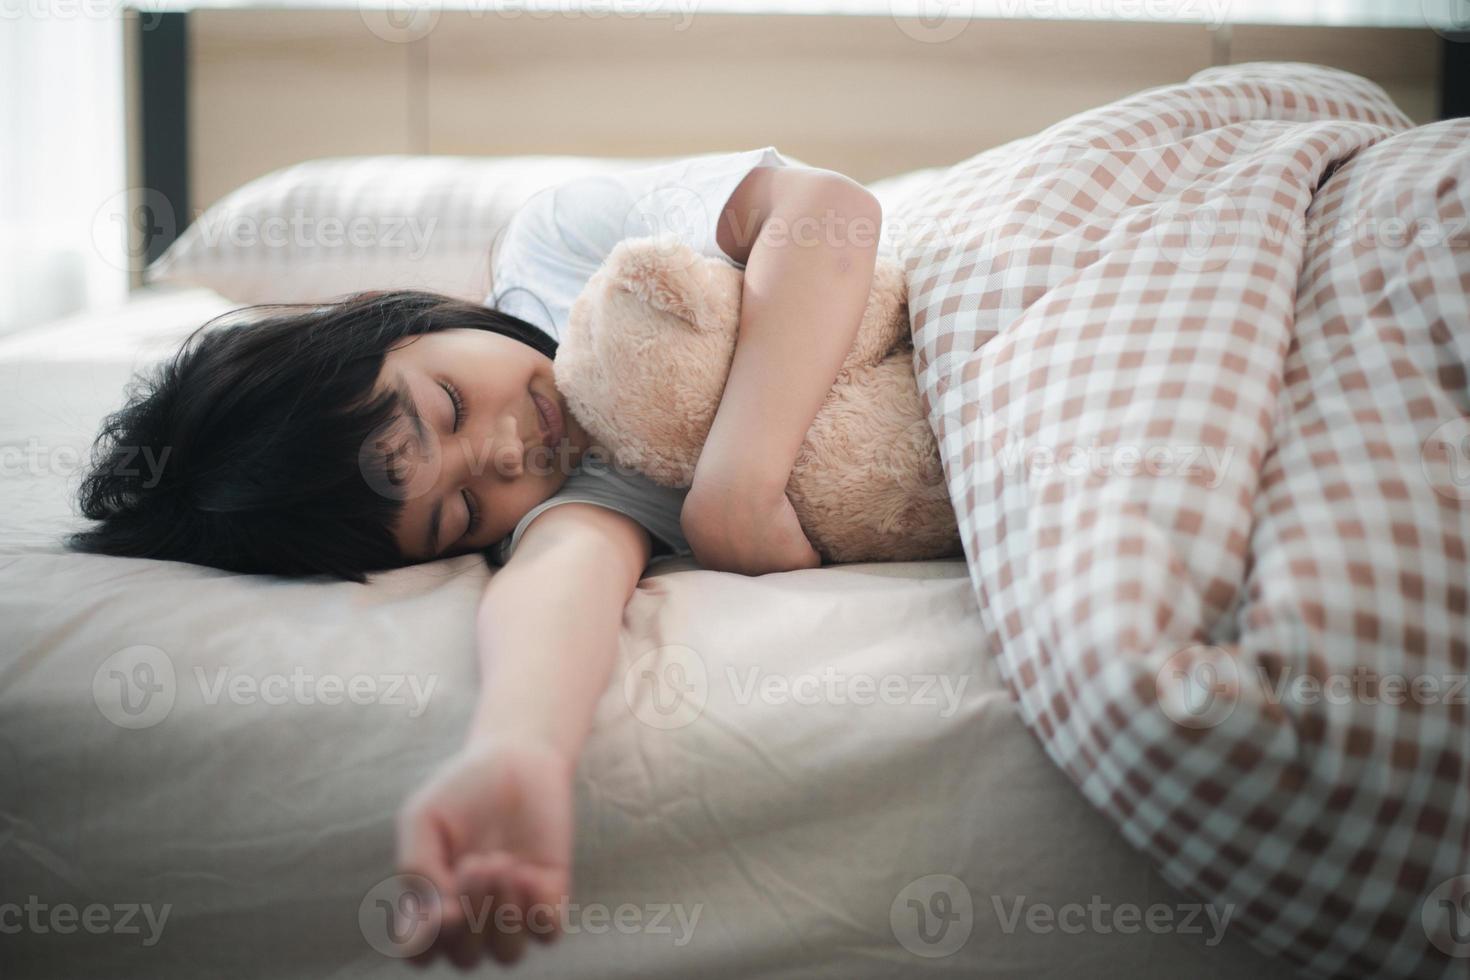 barn liten flicka sover i de säng med en leksak teddy Björn foto